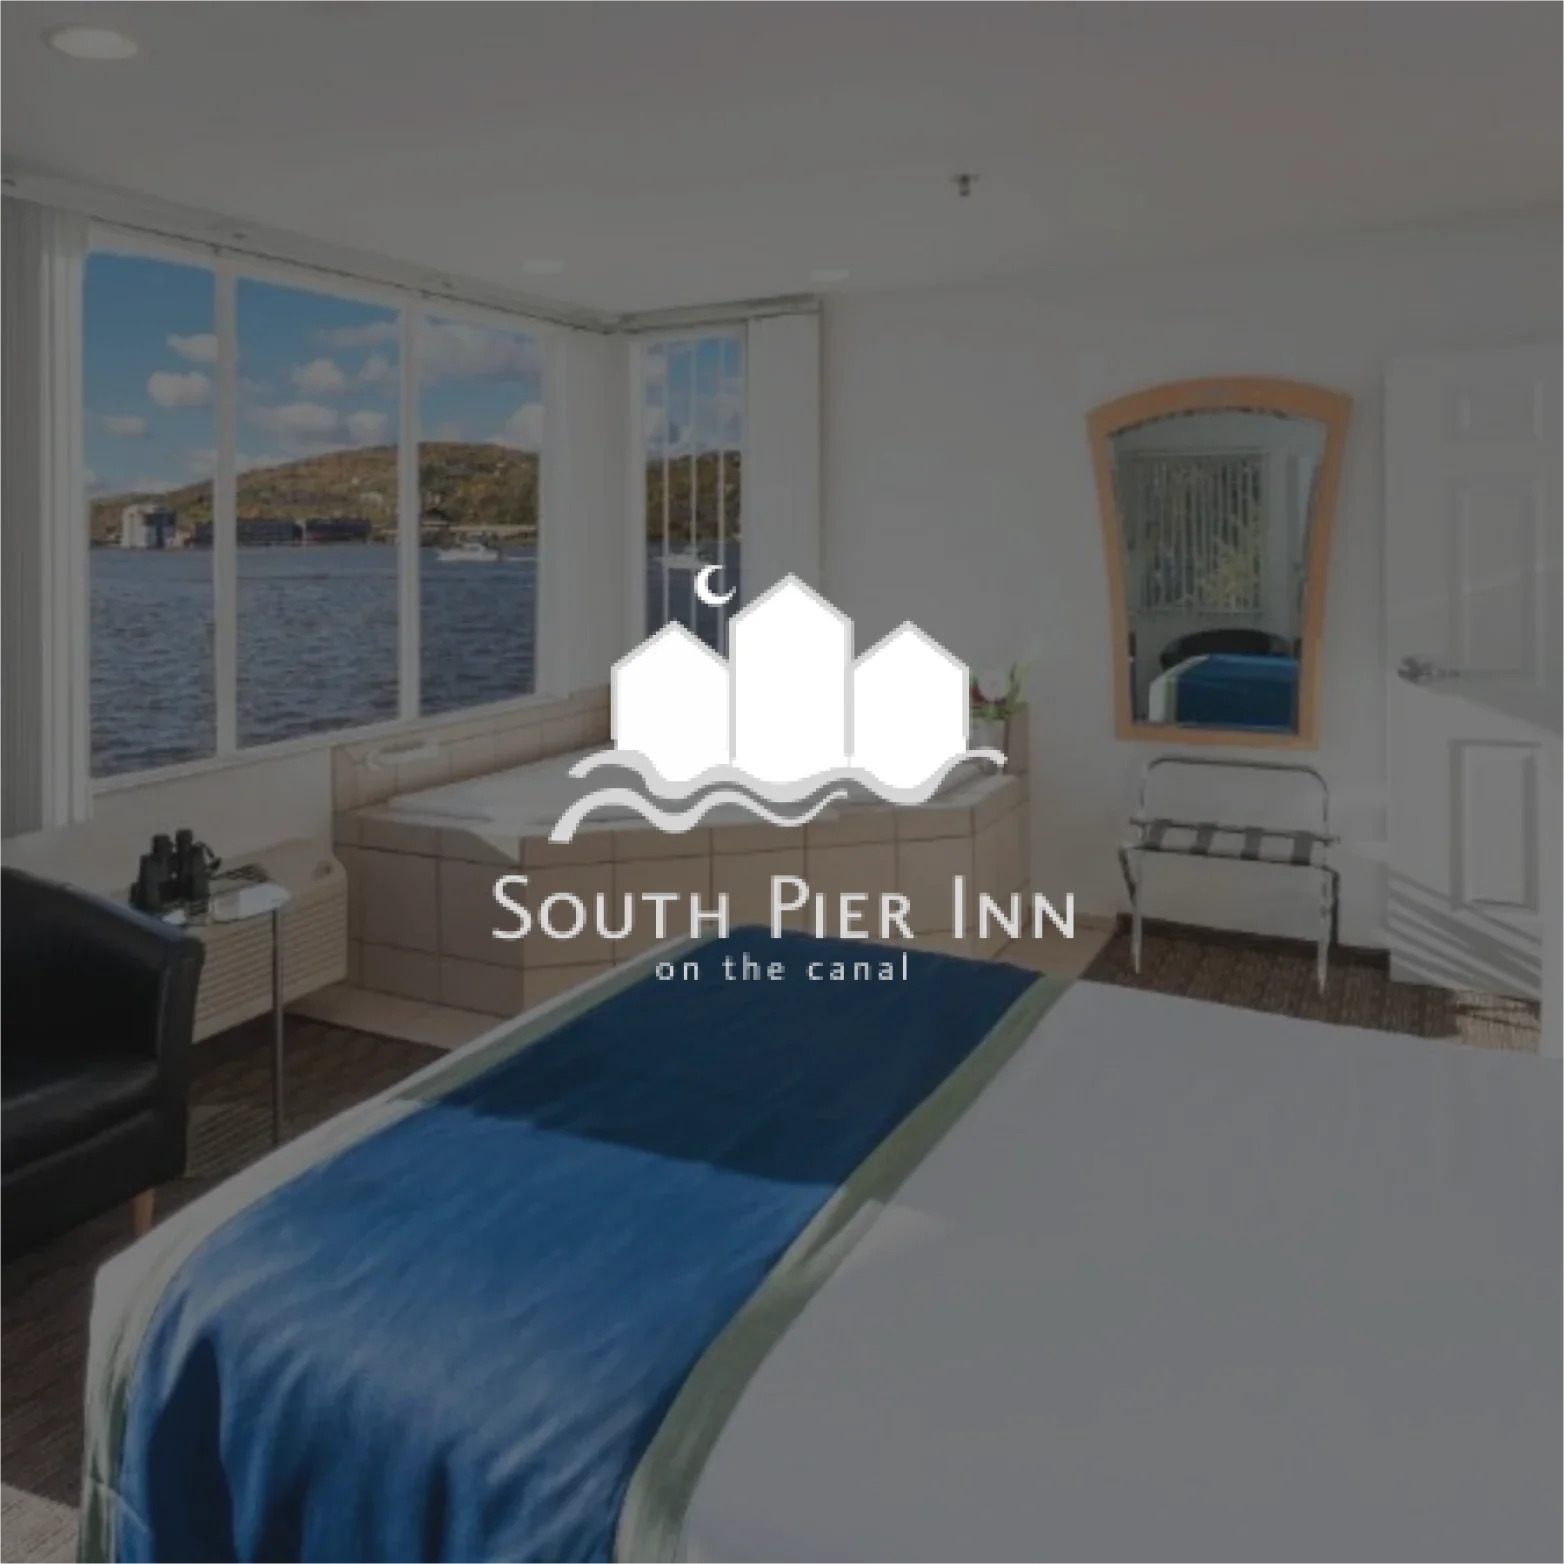 South Pier Inn: Tag Client